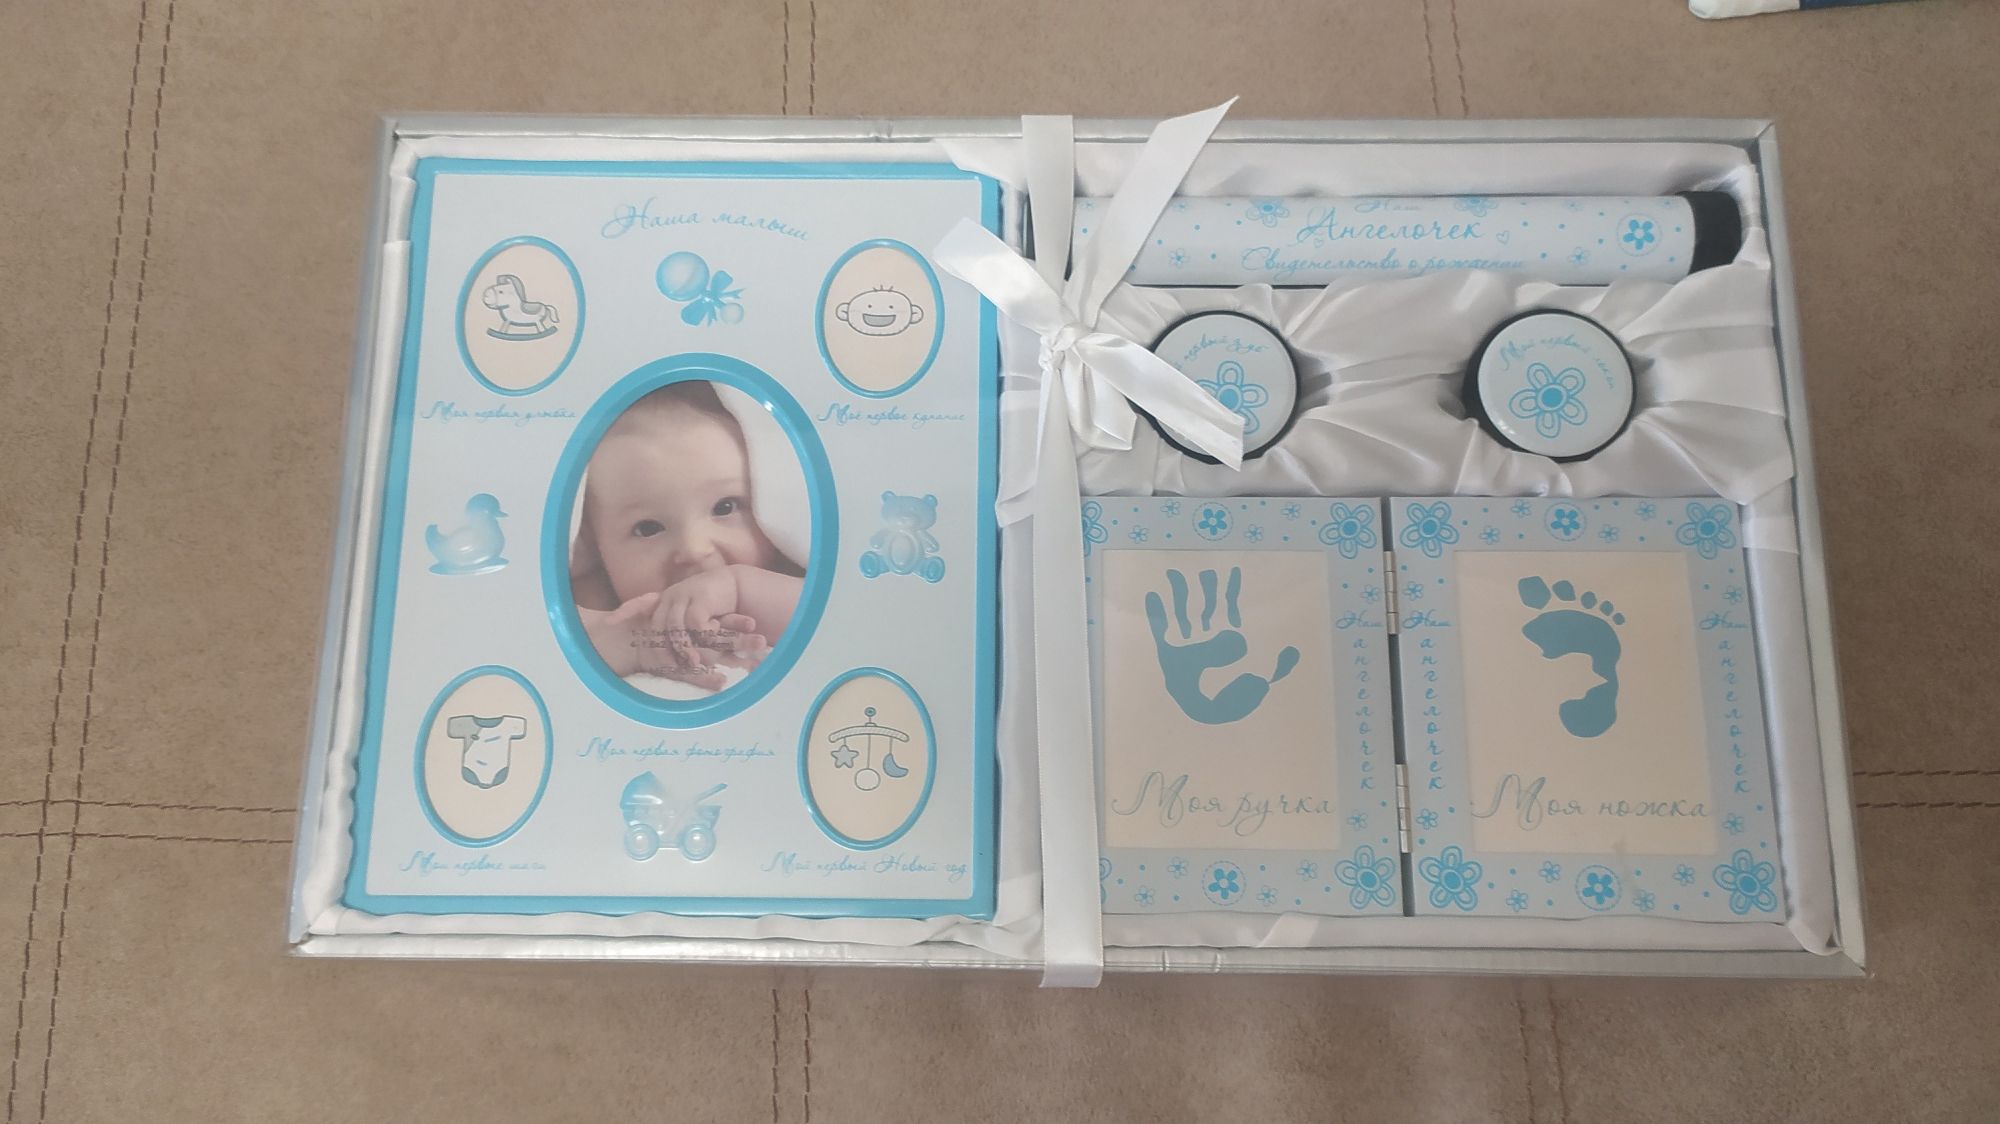 Подарунковий набір для новонародженого хлопчика